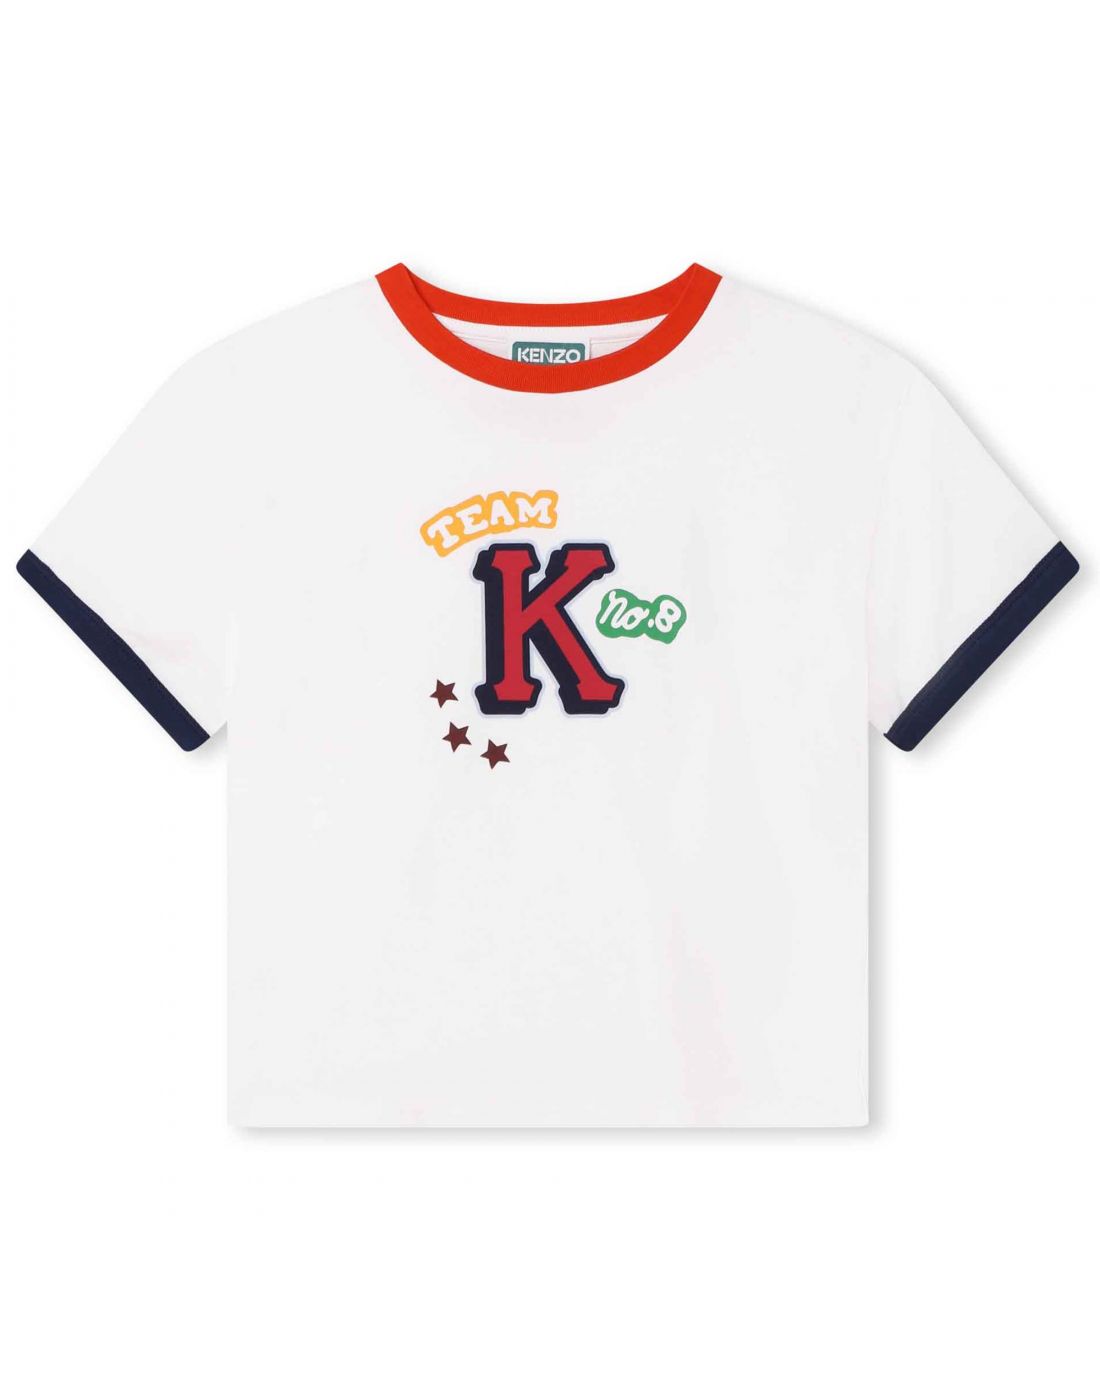 Παιδική Μπλούζα T-Shirt ΚΜ Kenzo, Kenzo, 23262273 | LapinKids.com | LAPIN  KIDS